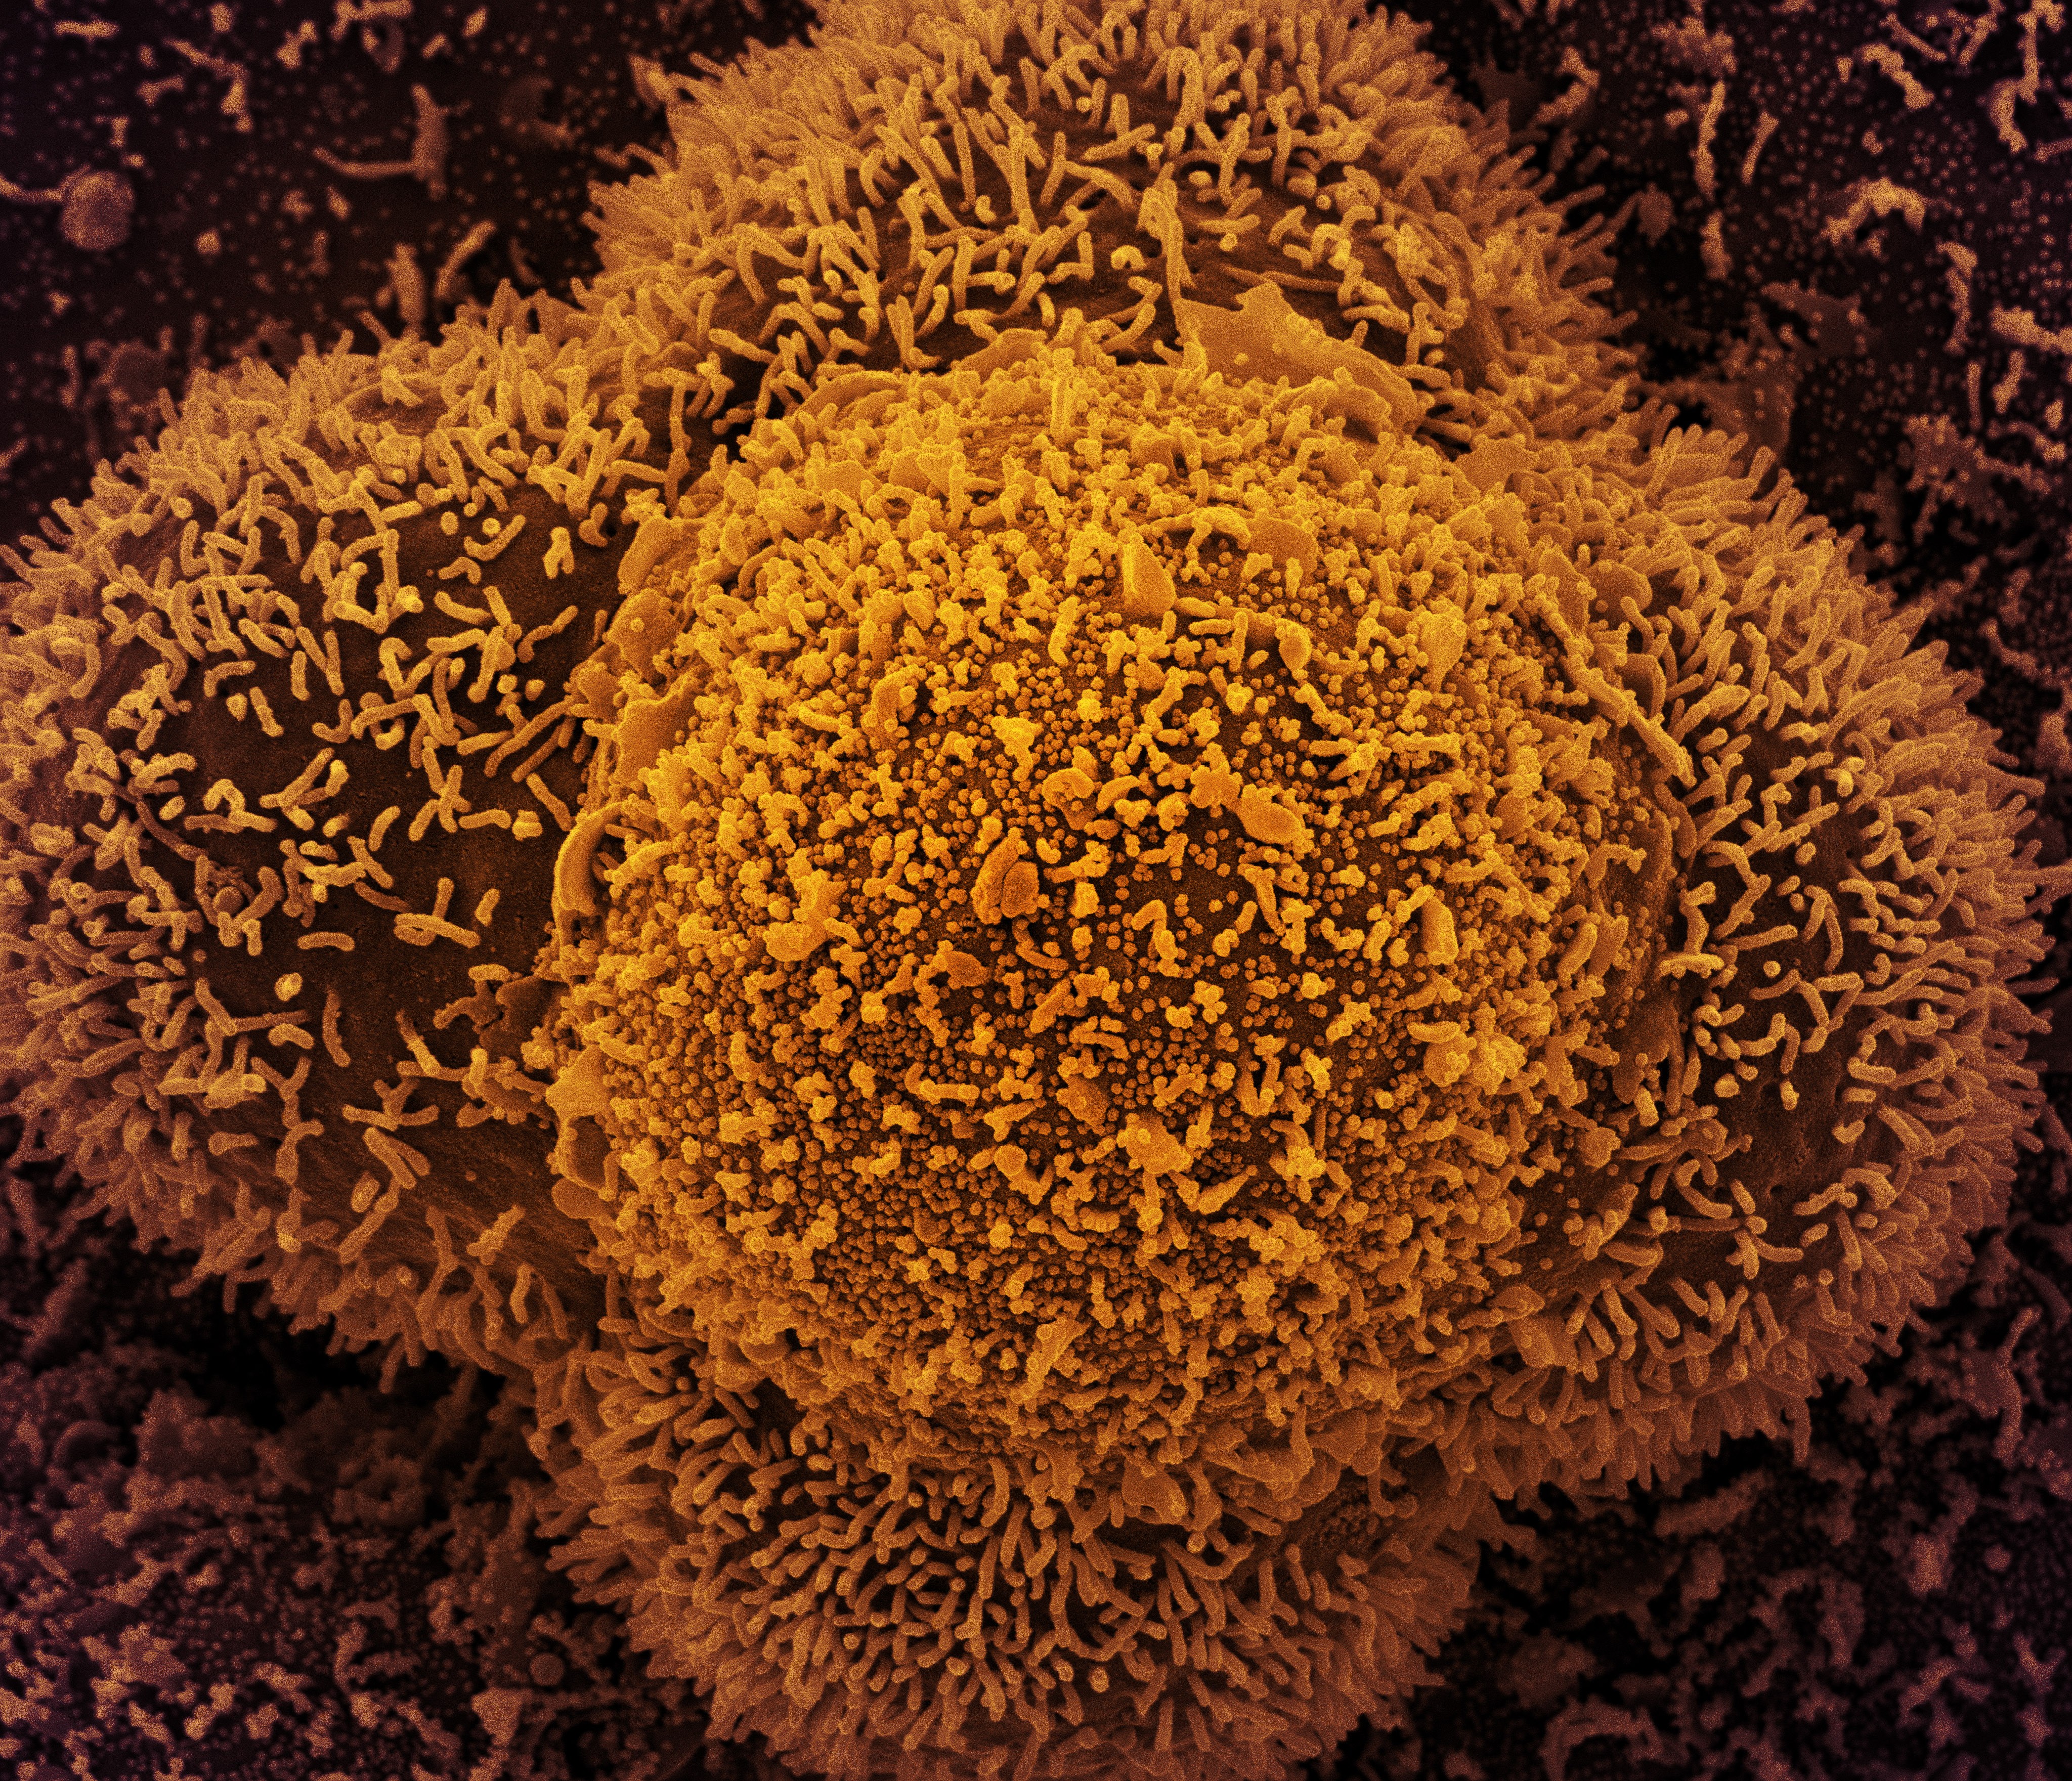 Células CCL-81 fortemente infectadas com partículas do vírus Sars-CoV-2, o vírus causador da Covid-19. As pequenas estruturas esféricas no centro da imagem são partículas do novo coronavírus, enquanto as protrusões semelhantes a fios que se estendem das c (Foto: Centro de Pesquisa Integrada (IRF) do NIAID )